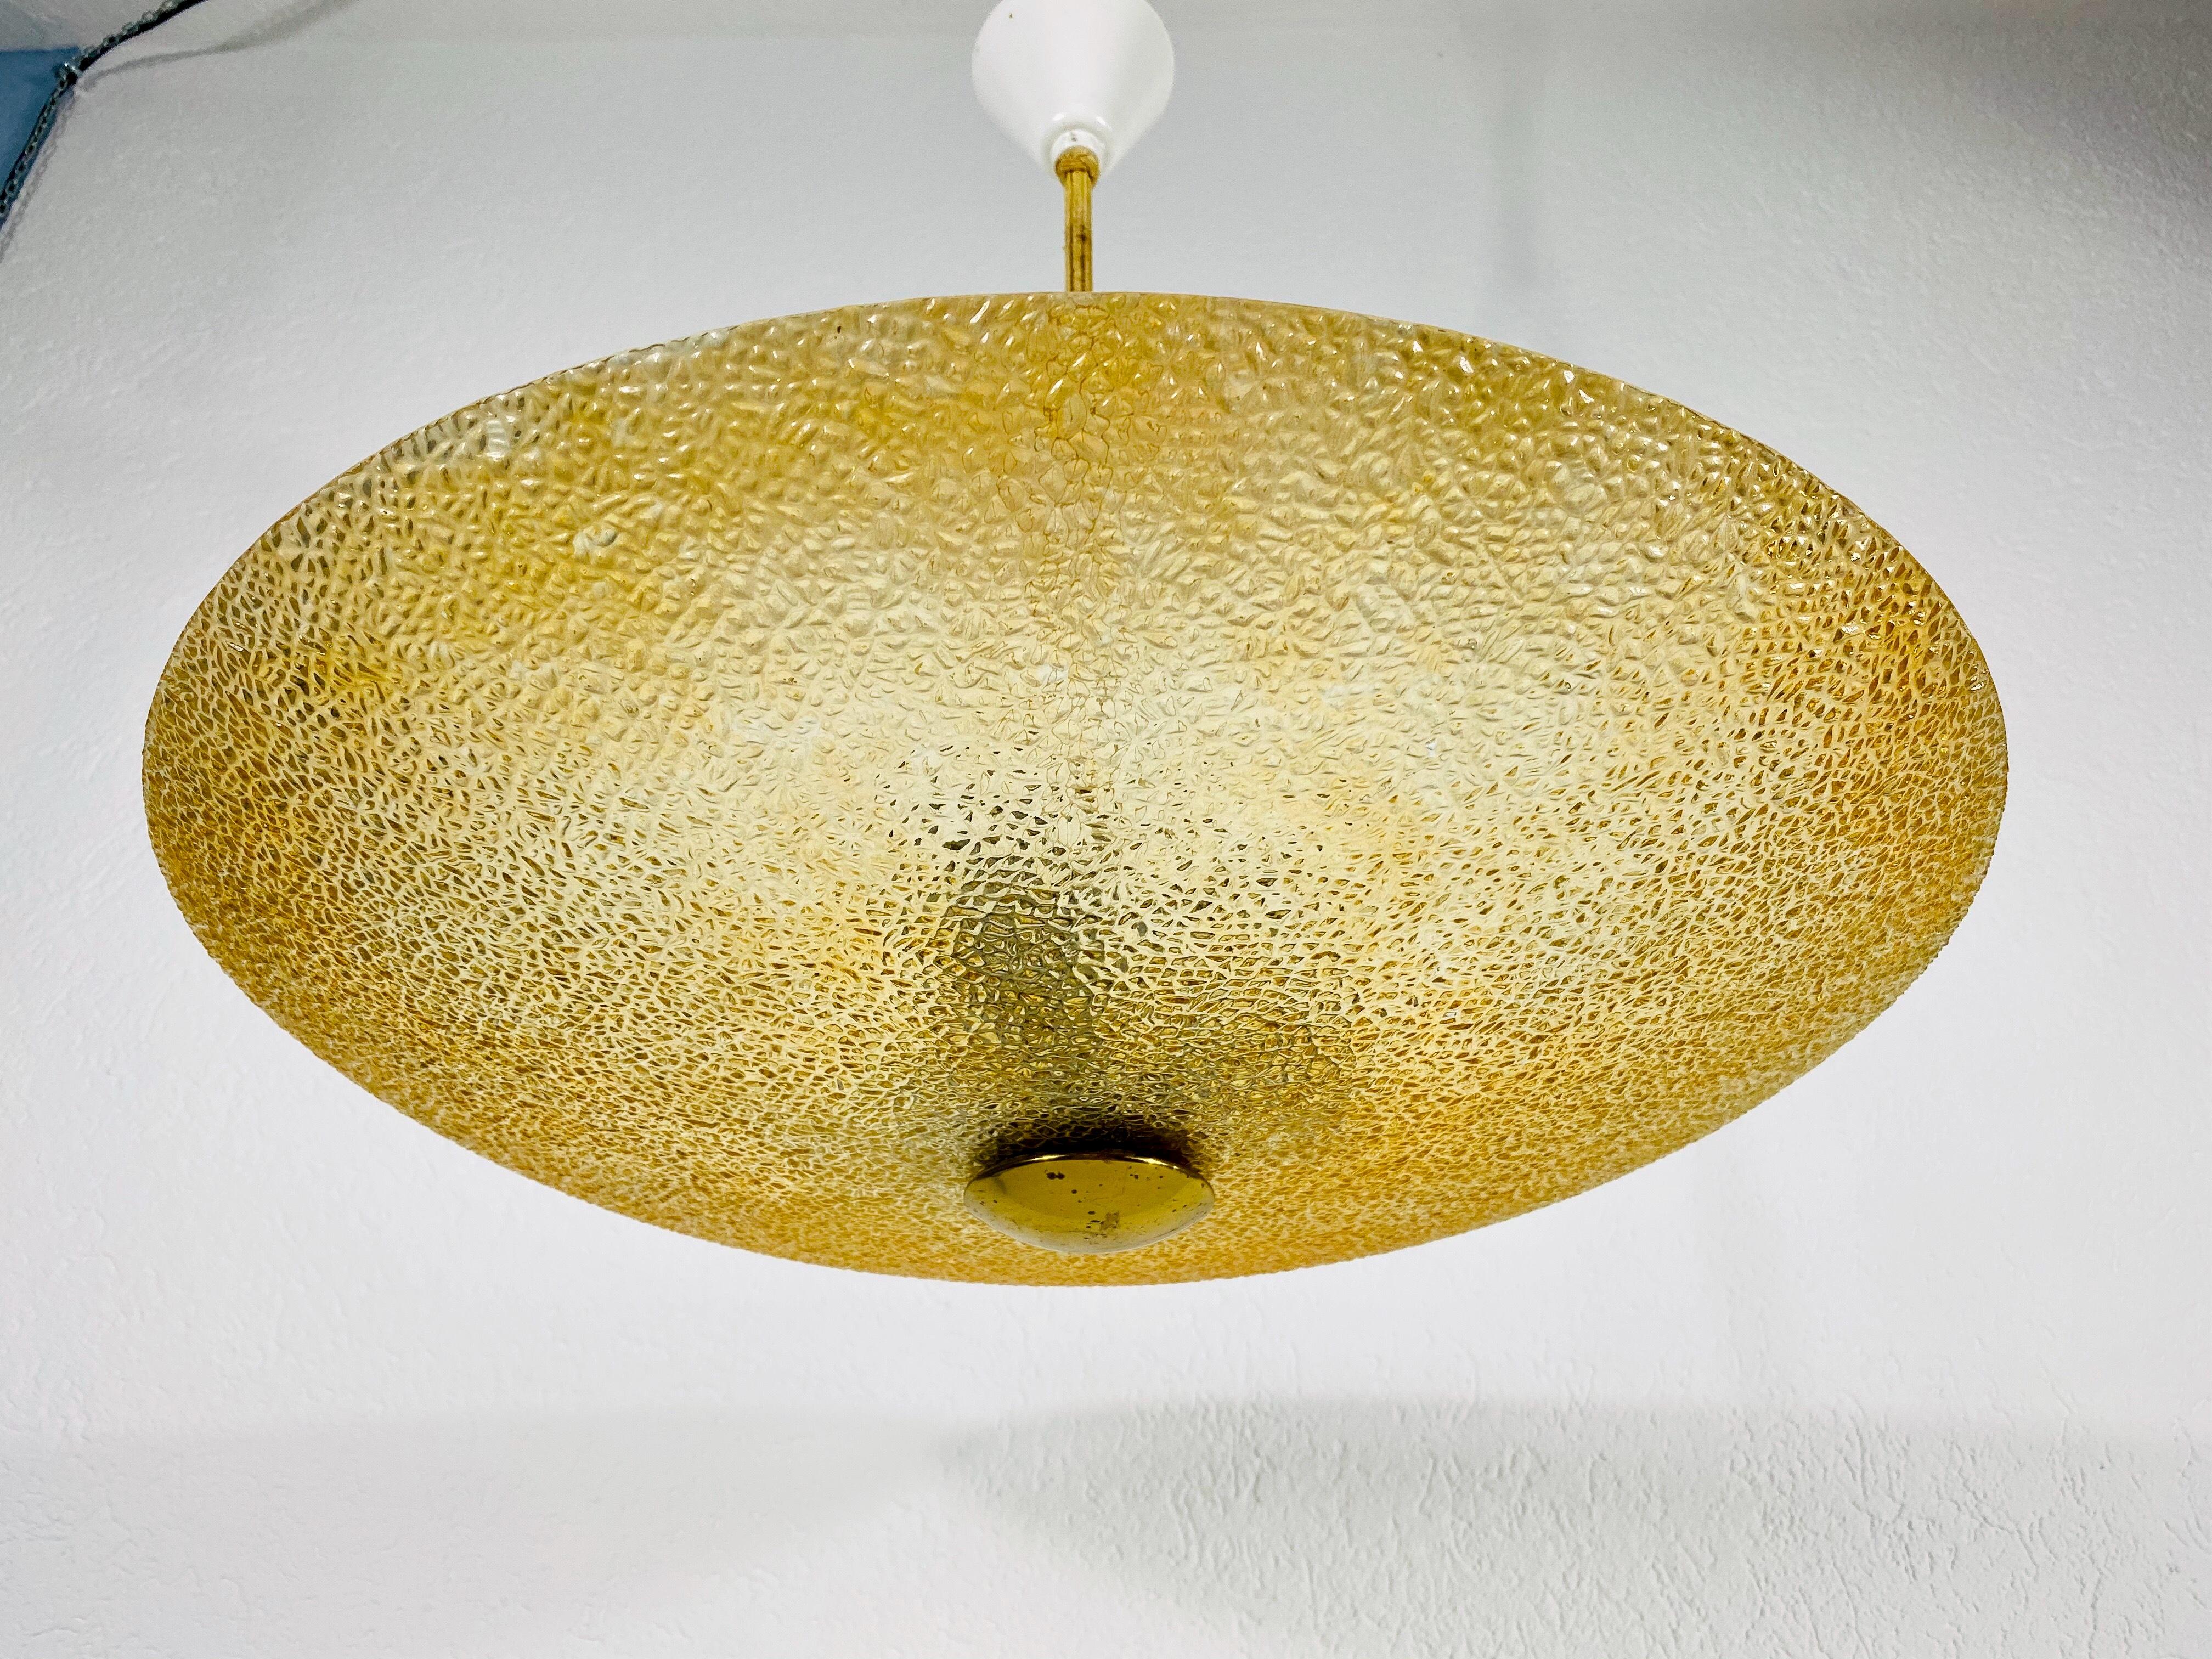 Lampe pendante moderne du milieu du siècle dernier attribuée à Boris Lacroix et fabriquée dans les années 1960. L'abat-jour est en verre acrylique et la barre est en corde.

Le luminaire nécessite des ampoules E27. Bon état vintage.

Expédition